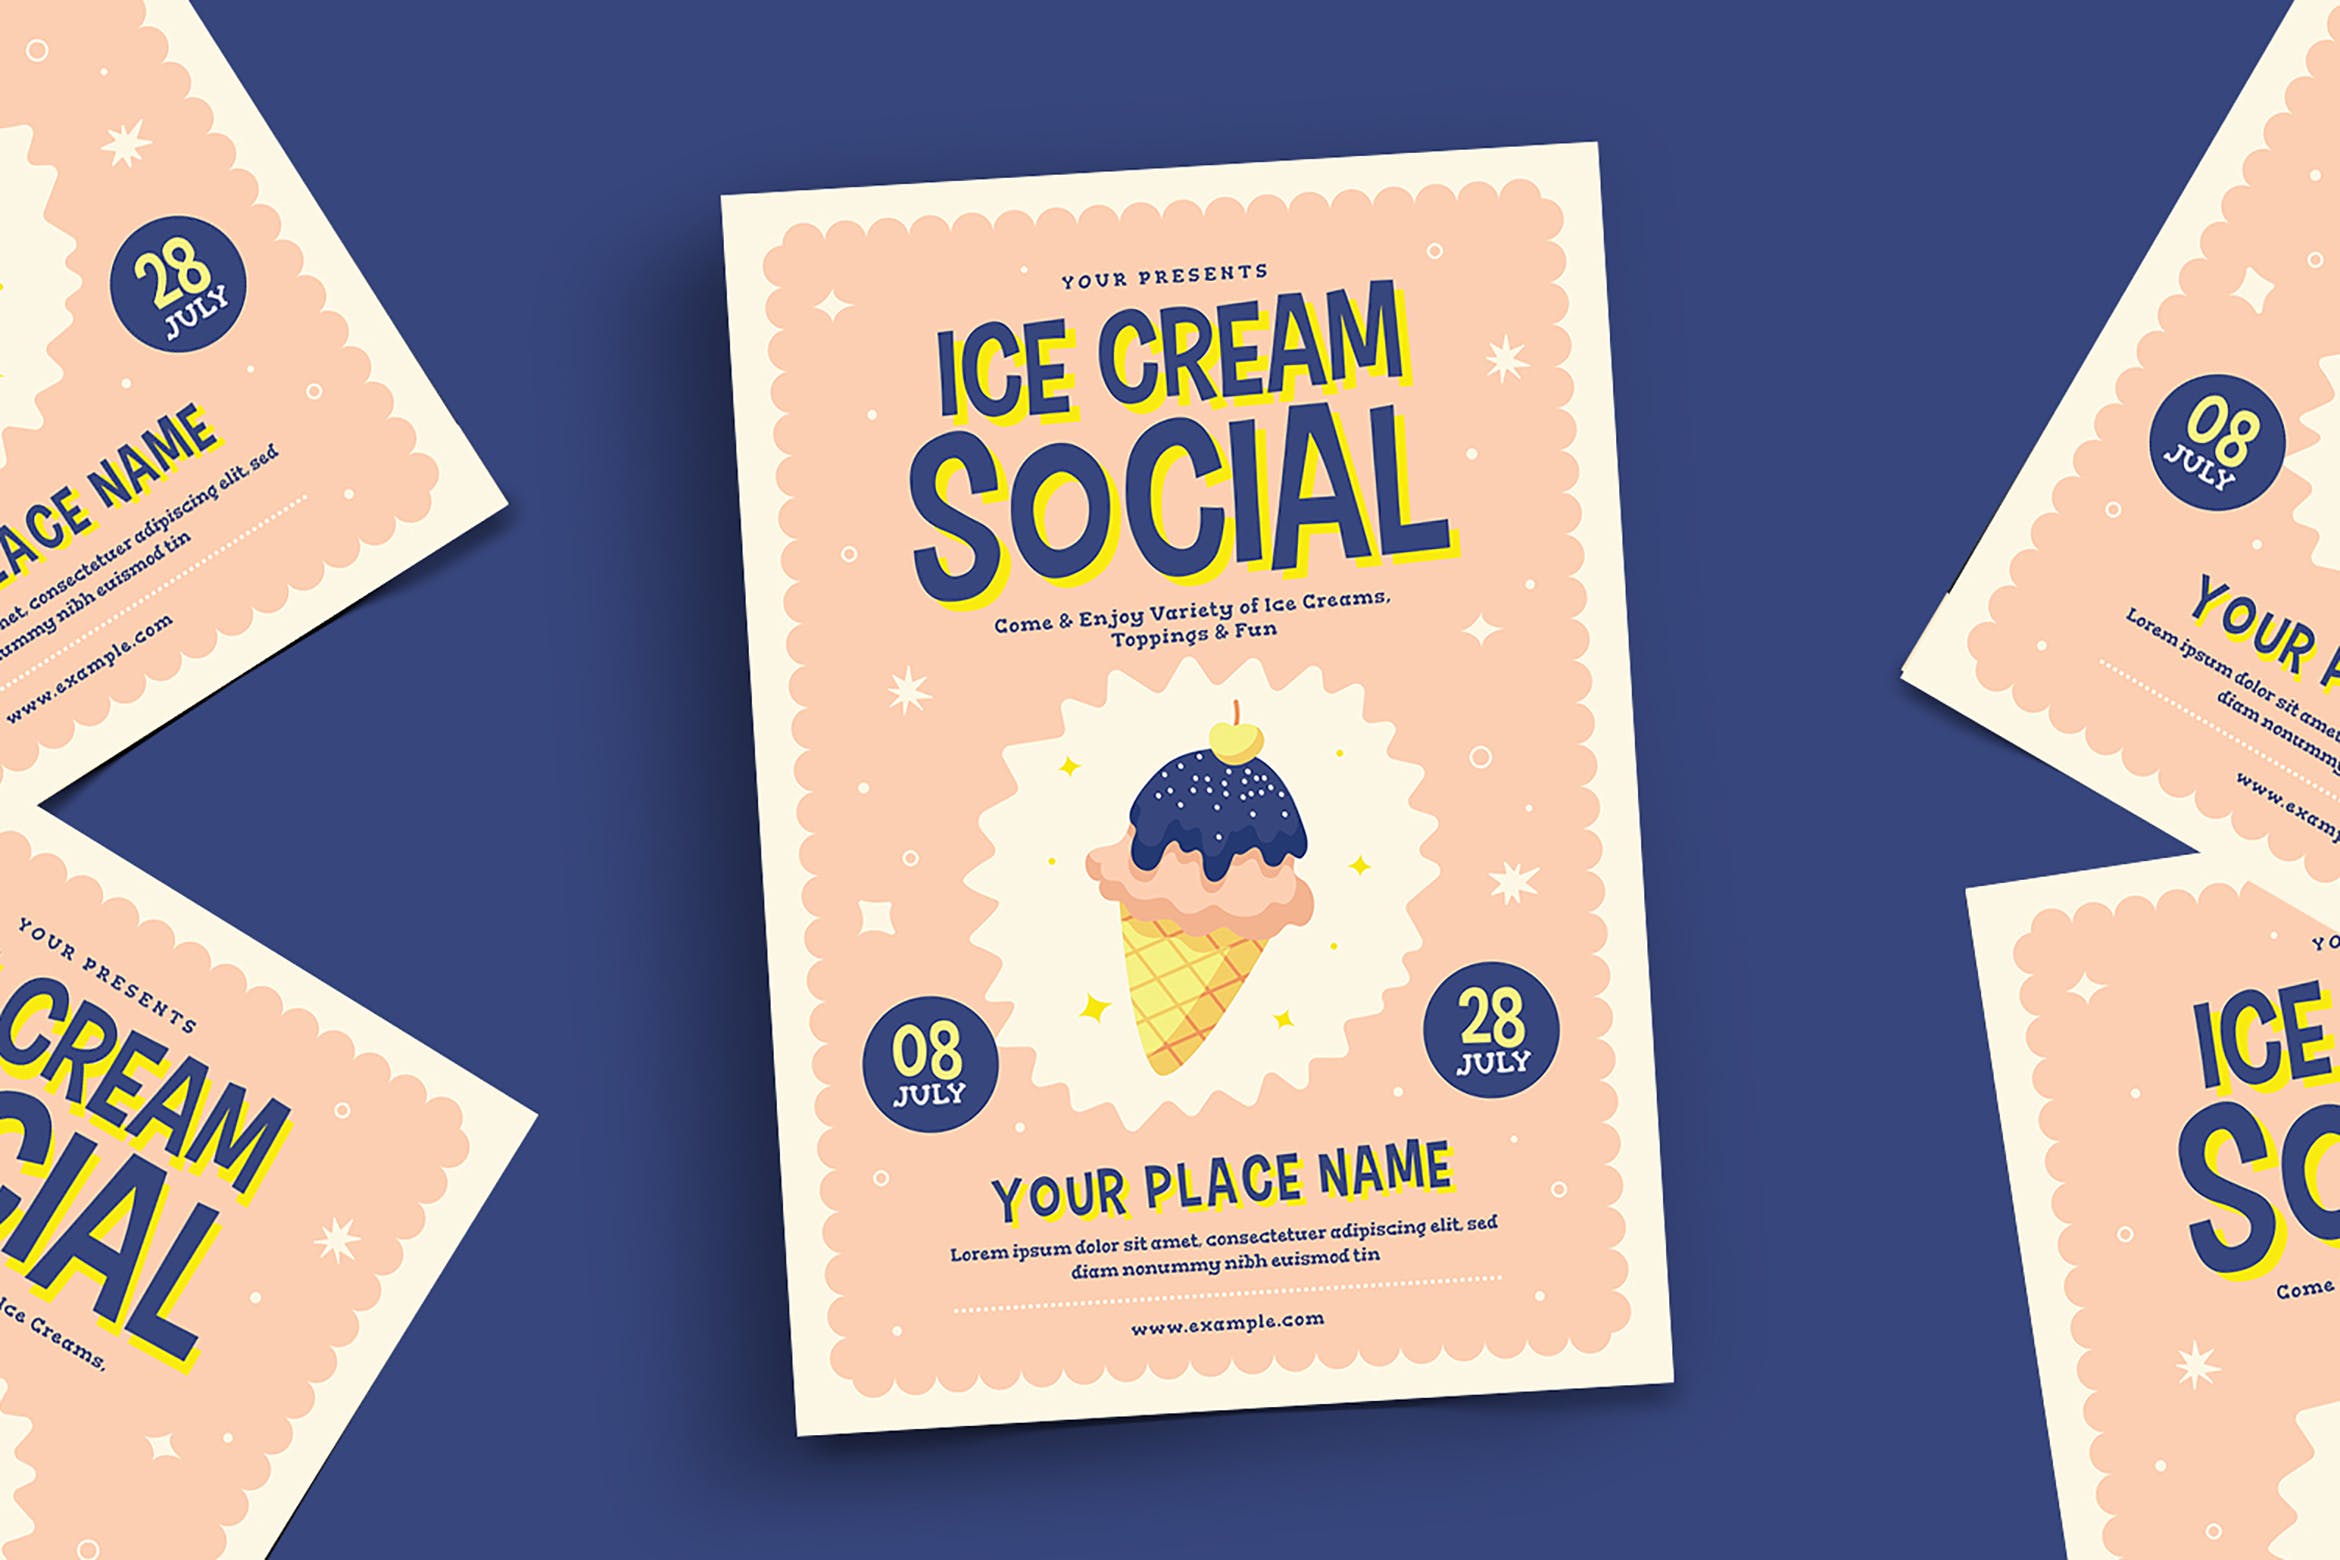 冰淇淋品鉴活动宣传海报传单设计模板 Ice Cream Social Flyer插图